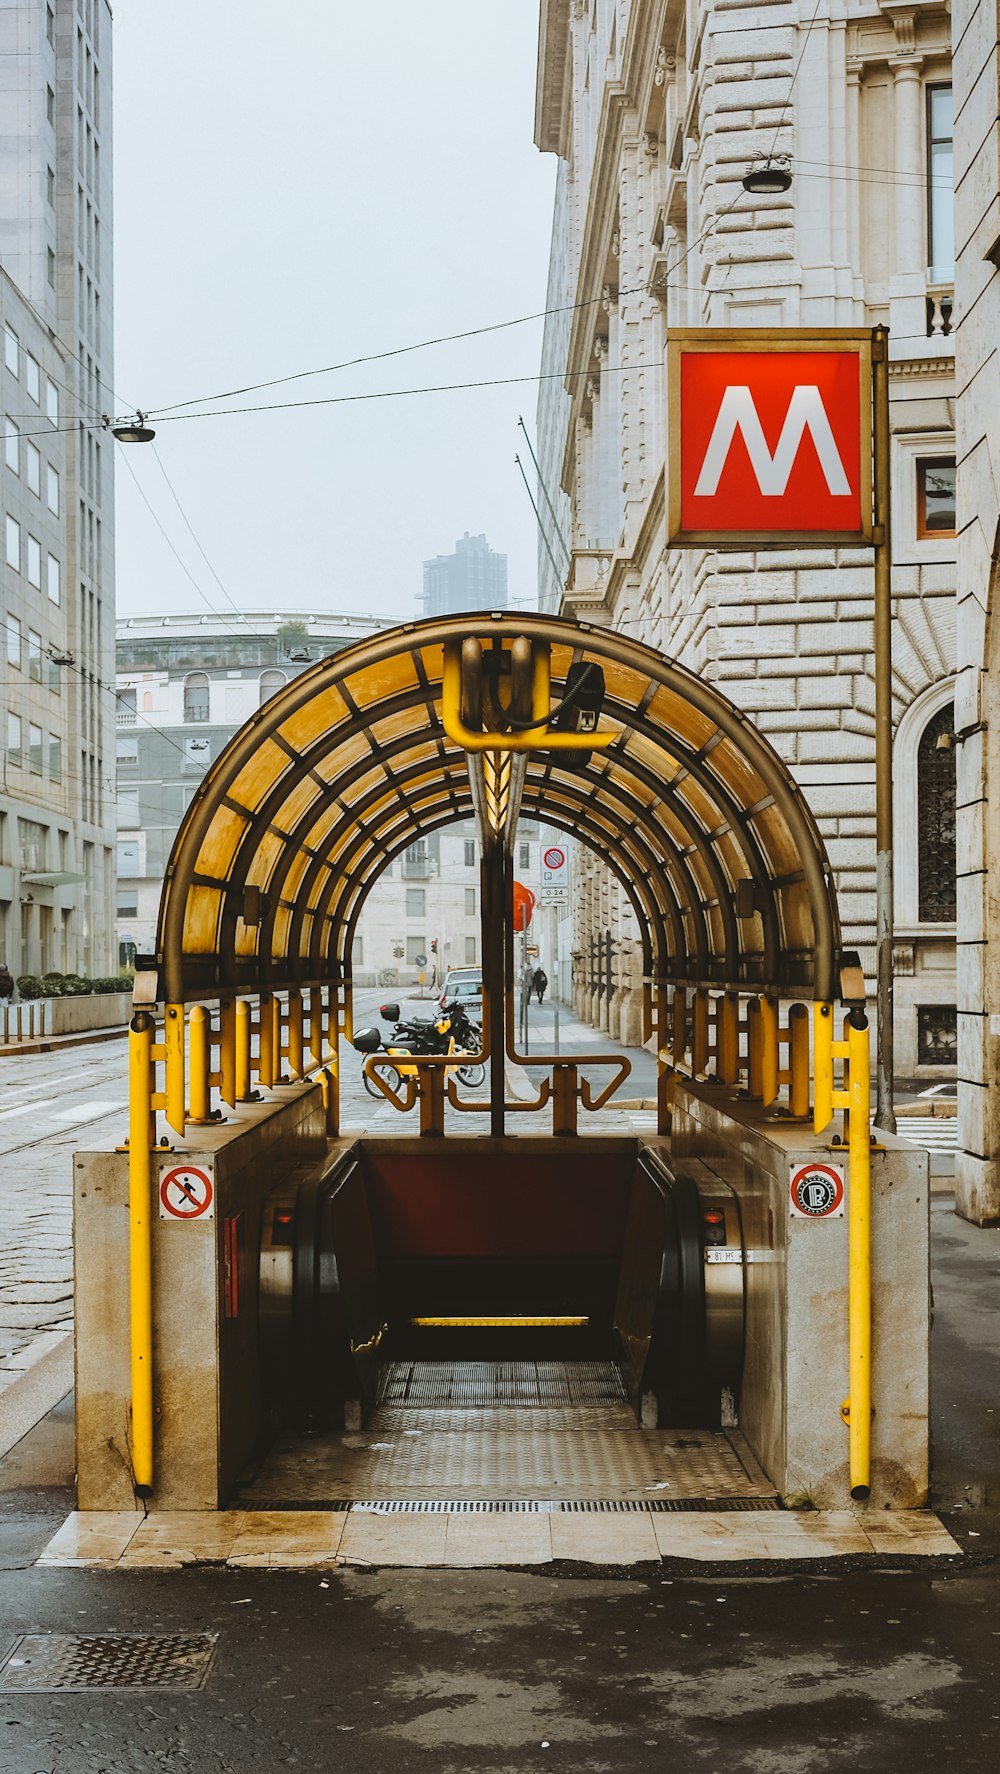 Entrada da estação de metrô na cidade durante o dia